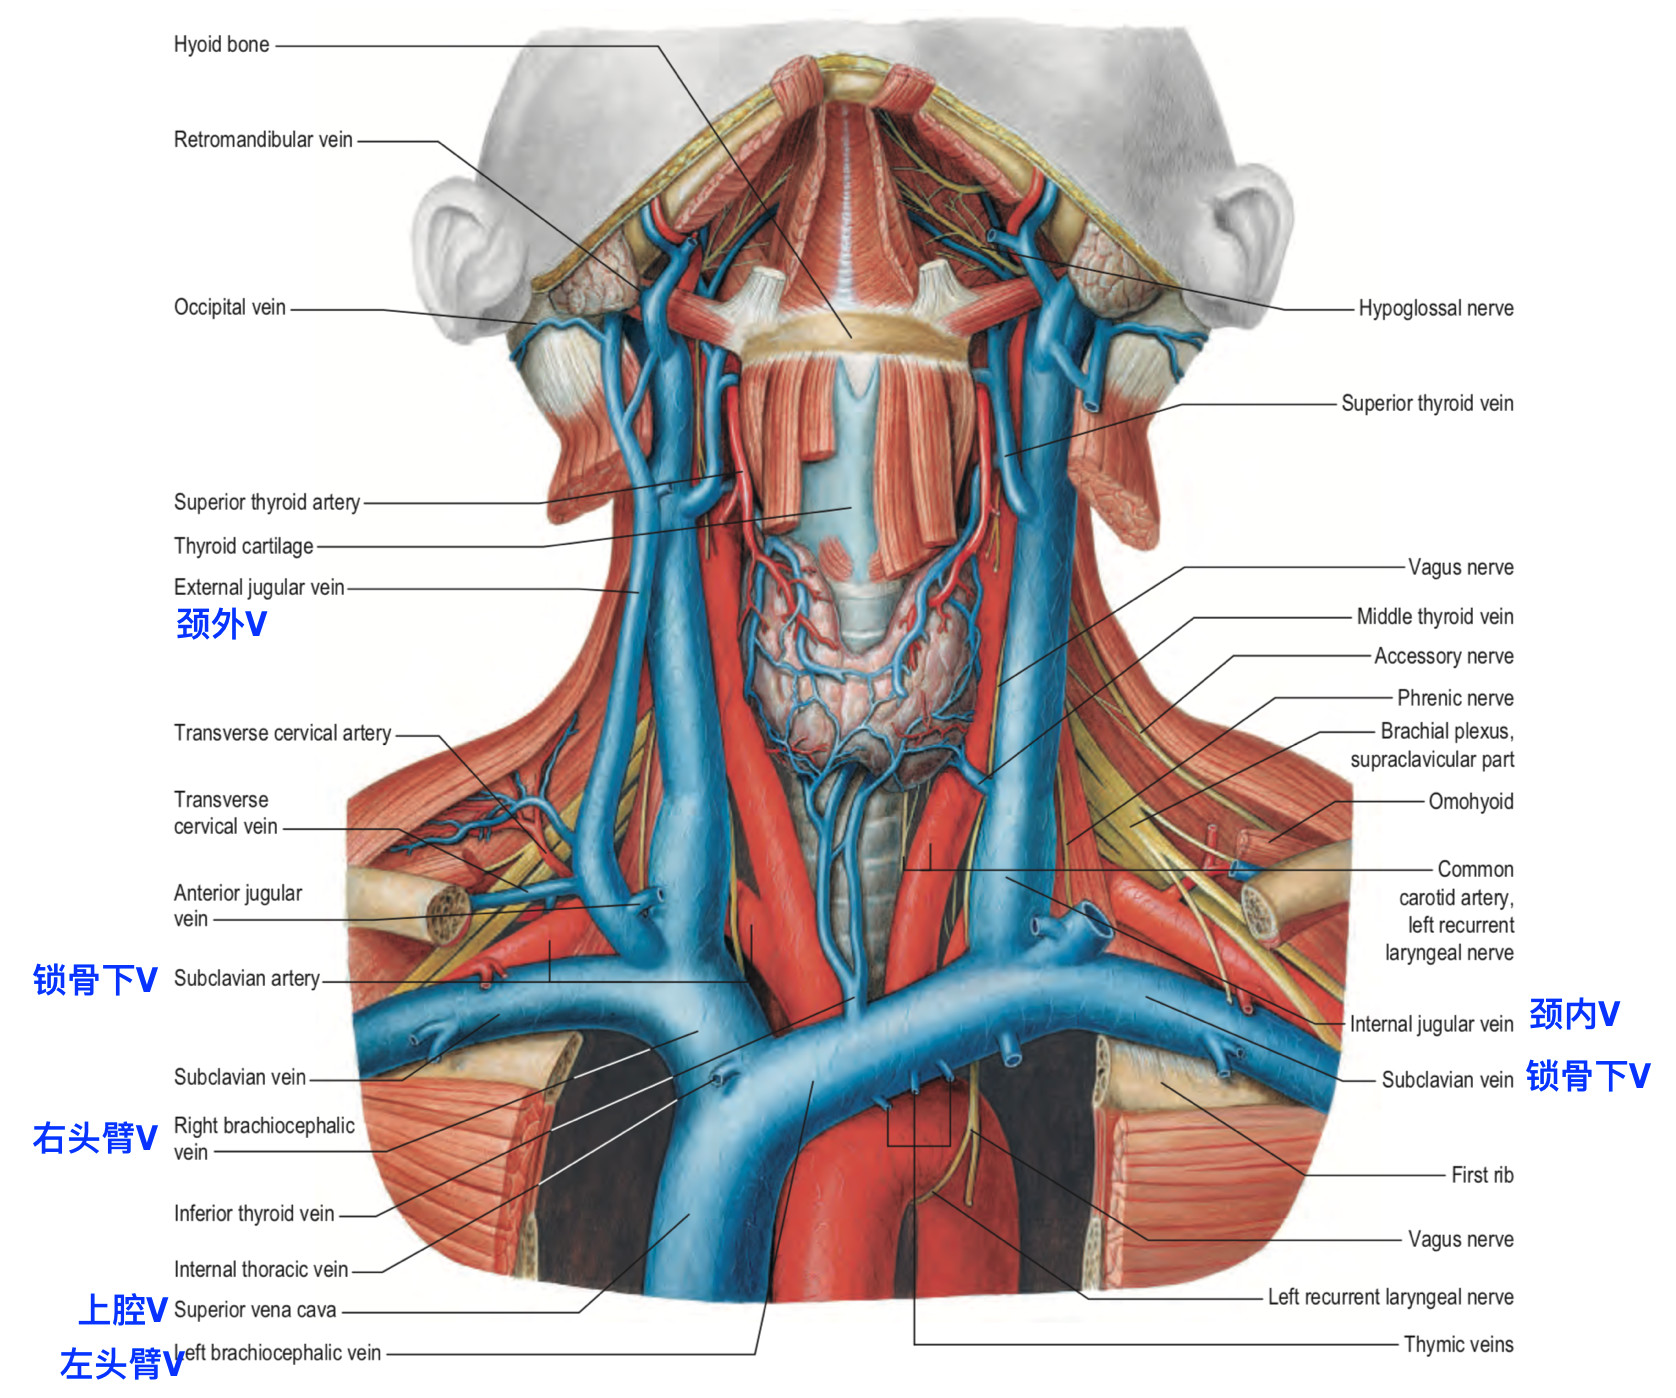 脑血管解剖学习笔记第25期颈内静脉大体解剖